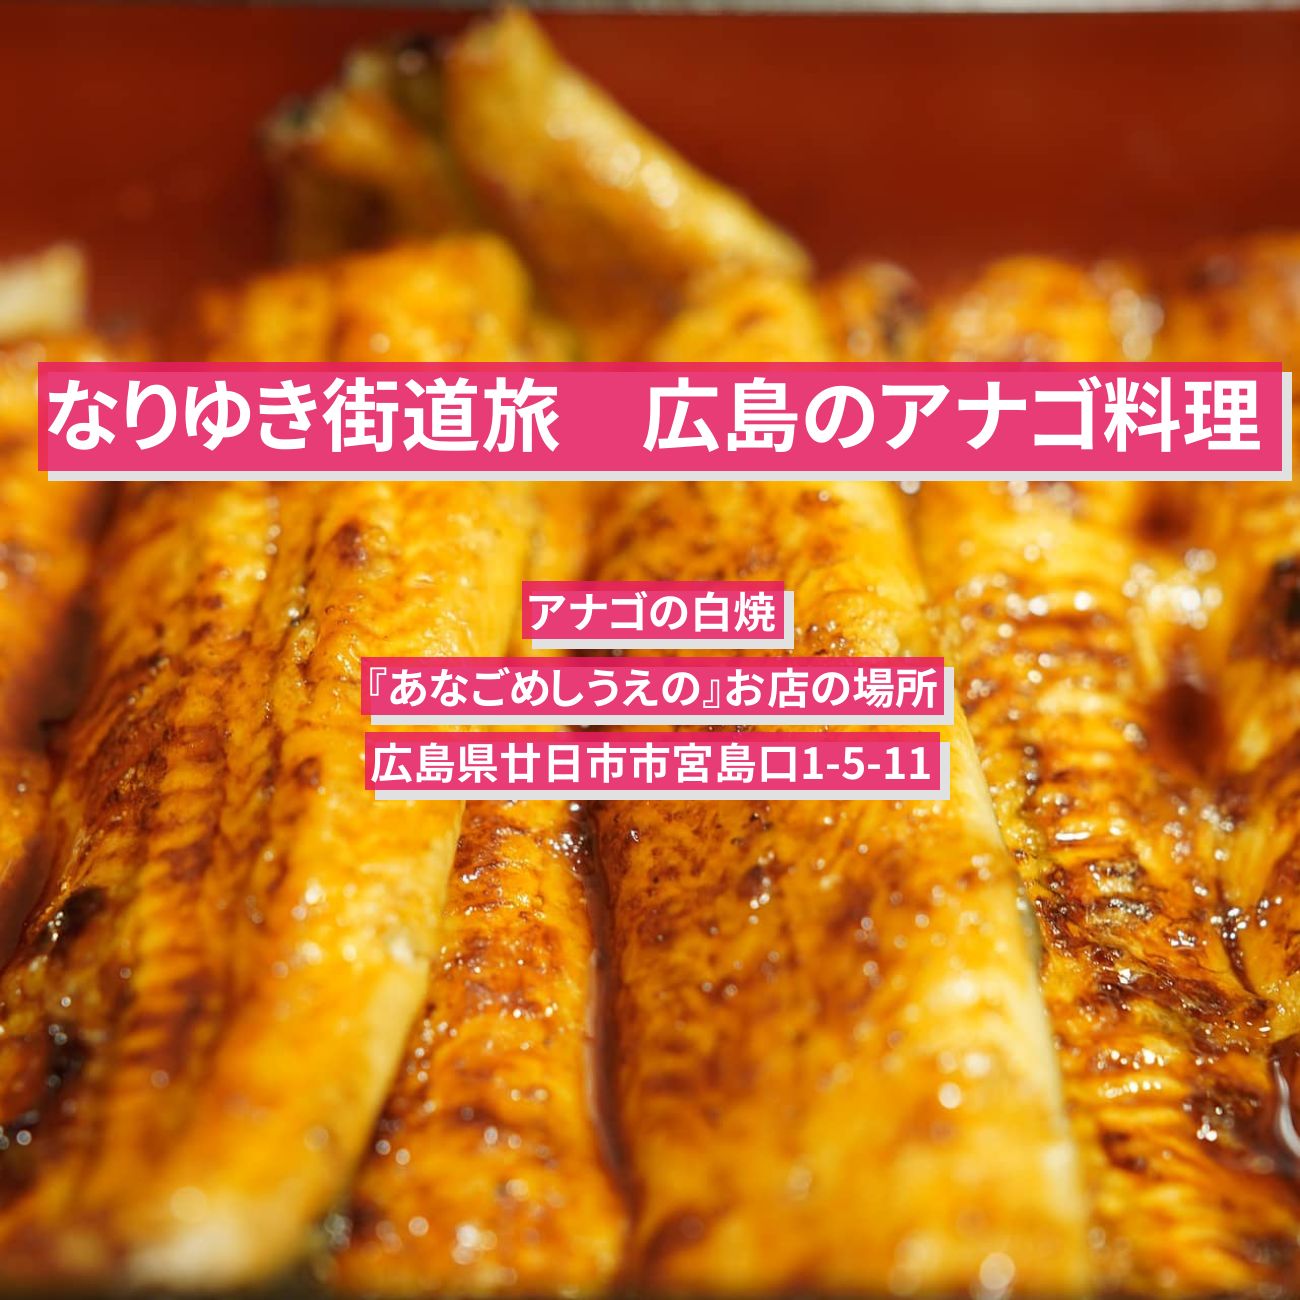 【なりゆき街道旅】広島のアナゴ料理『あなごめし うえの』お店の場所〔六平直政〕